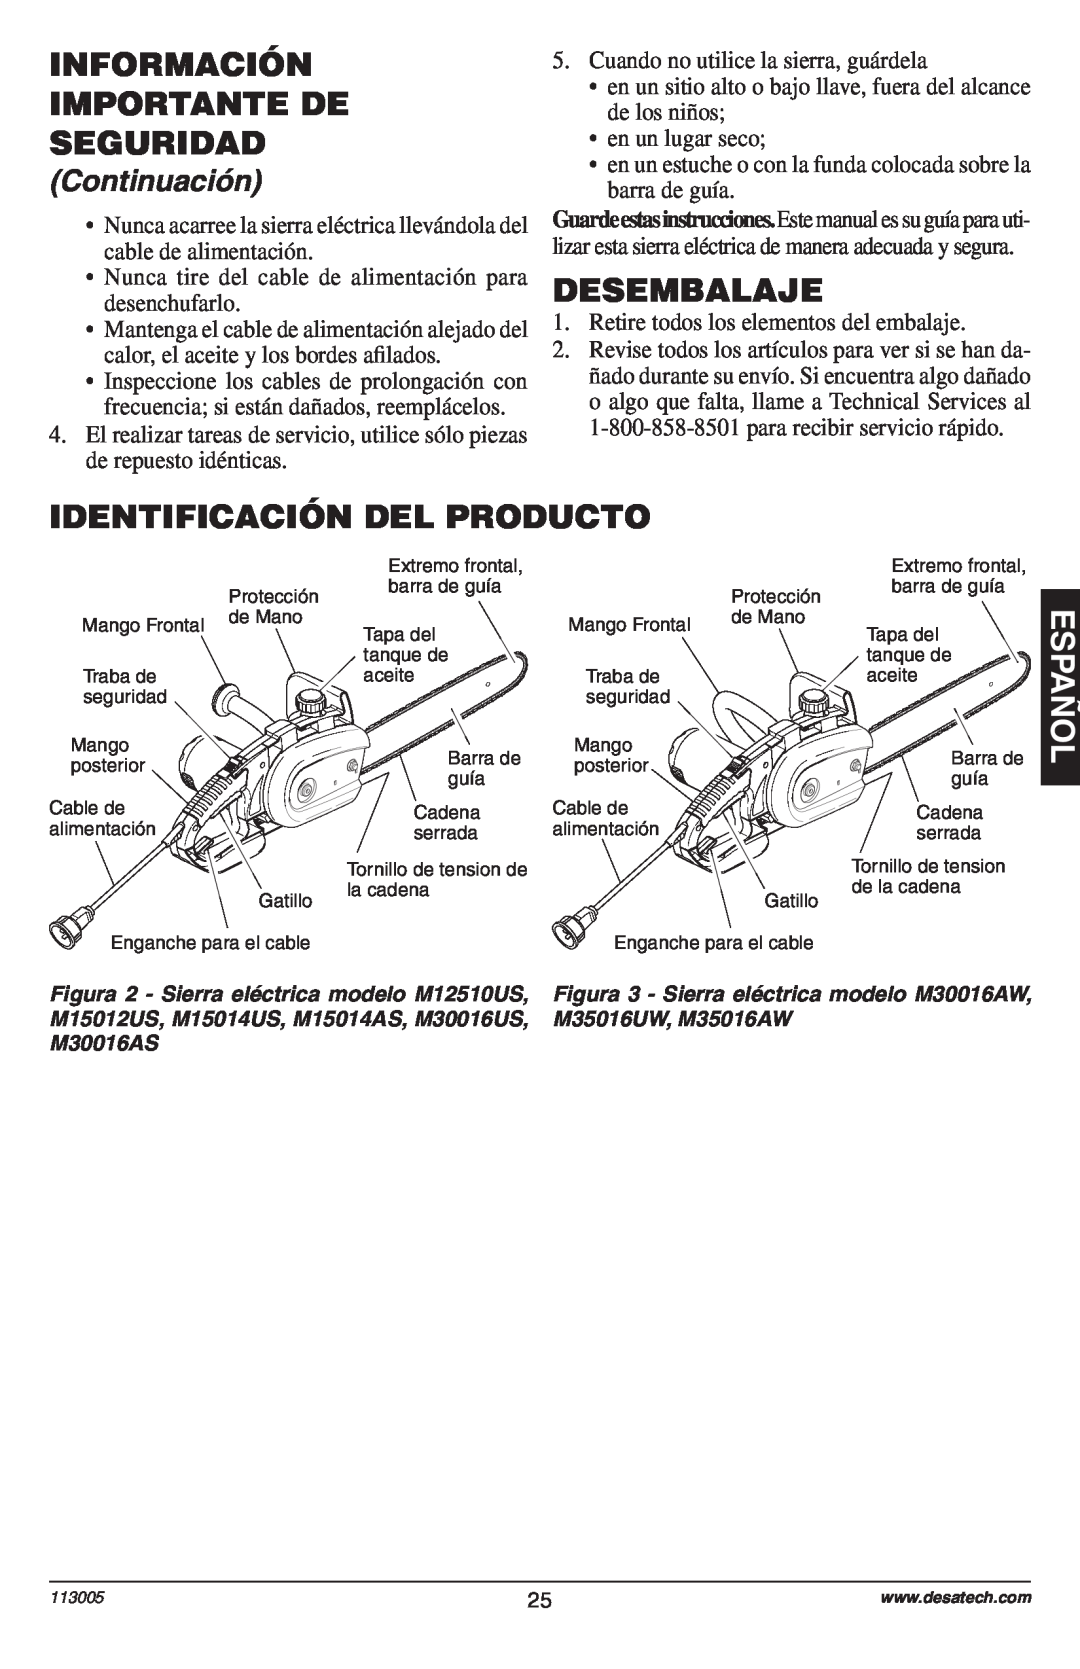 Remington Power Tools Electric Chain Saw Desembalaje, Identificación Del Producto, Información Importante De Seguridad 